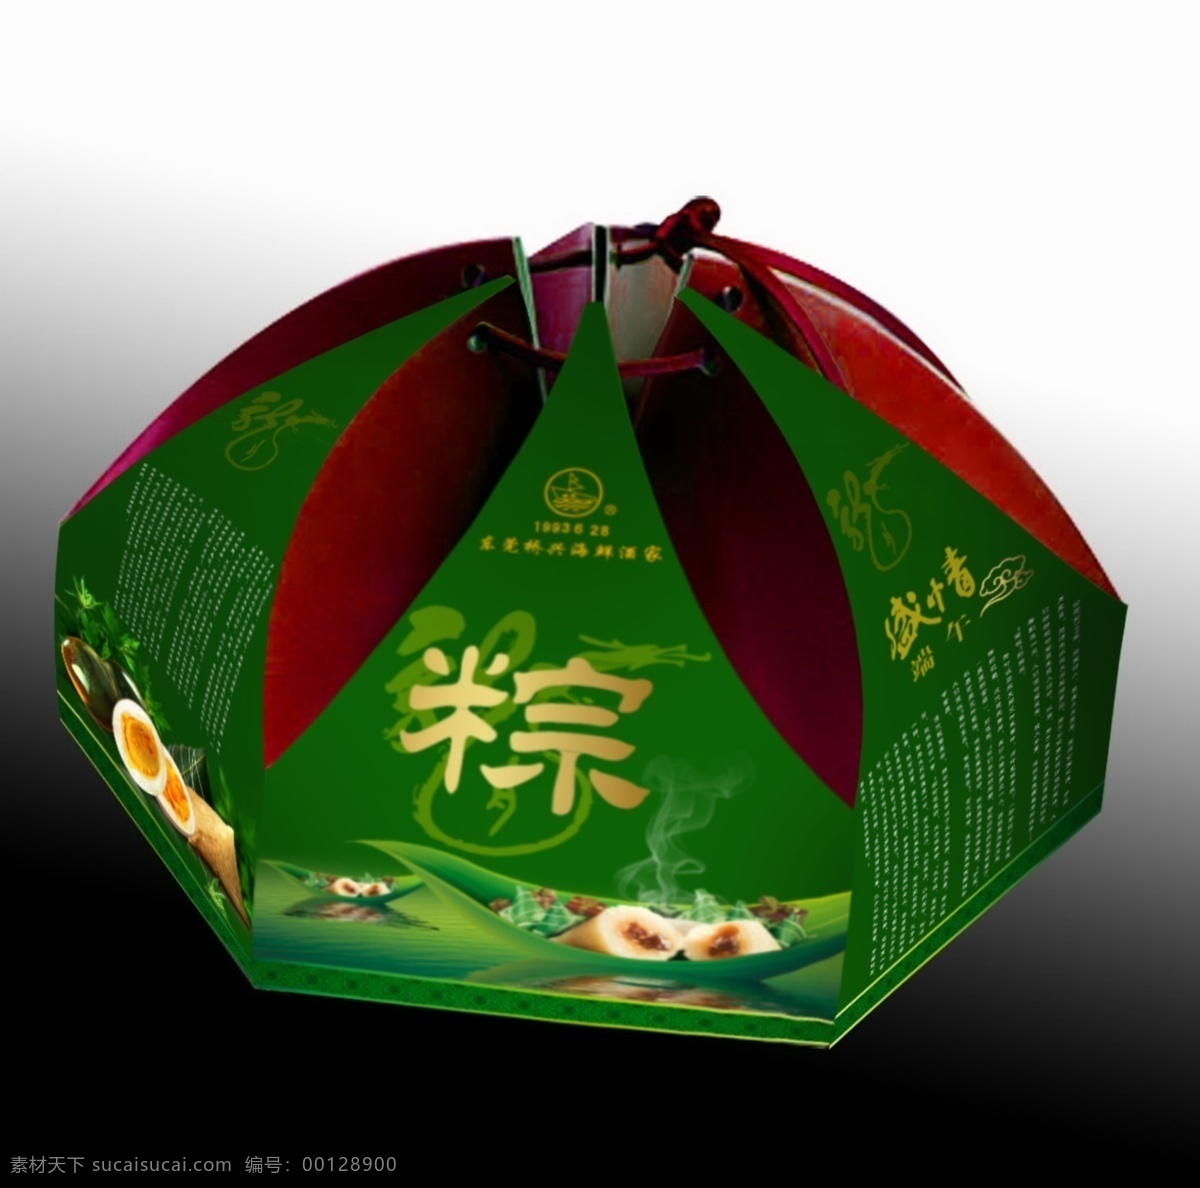 粽子 包装 效果图 粽子包装盒 包装盒 盒子 粽子盒 源文件 原创设计 文化艺术 白色